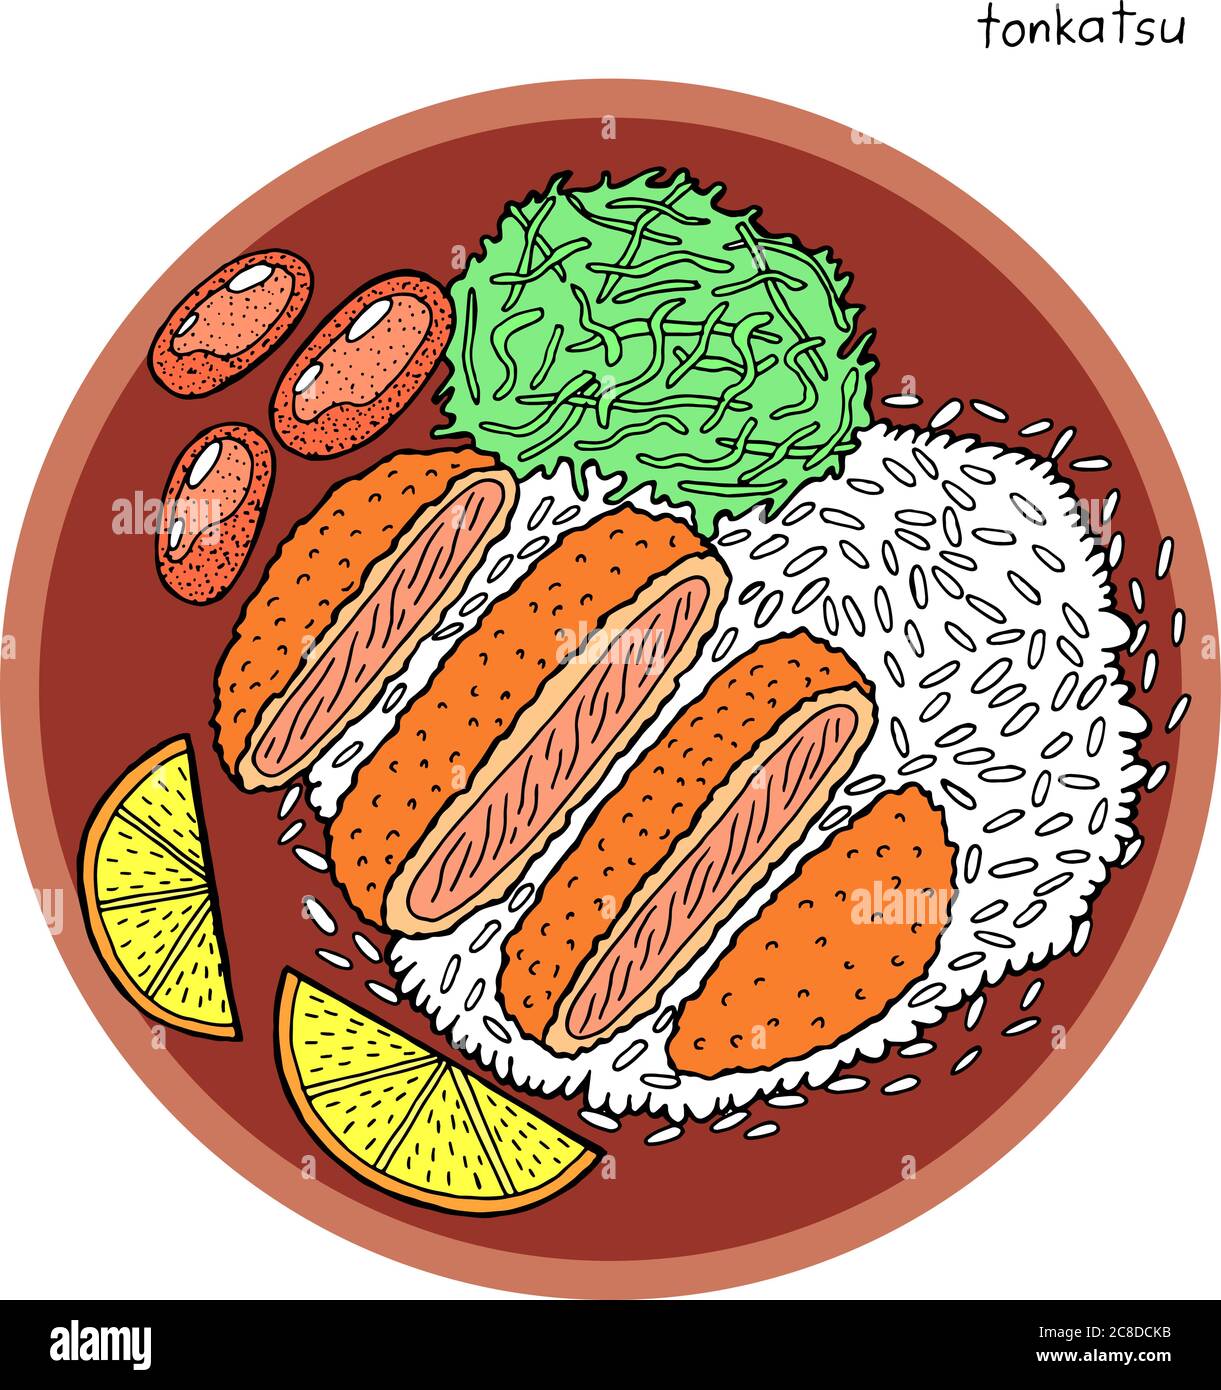 Tonkatsu - illustrazione giapponese dell'inchiostro alimentare. Grafica a colori. Arte colorata e realistica per il design del menu. Illustrazione vettoriale. Illustrazione Vettoriale